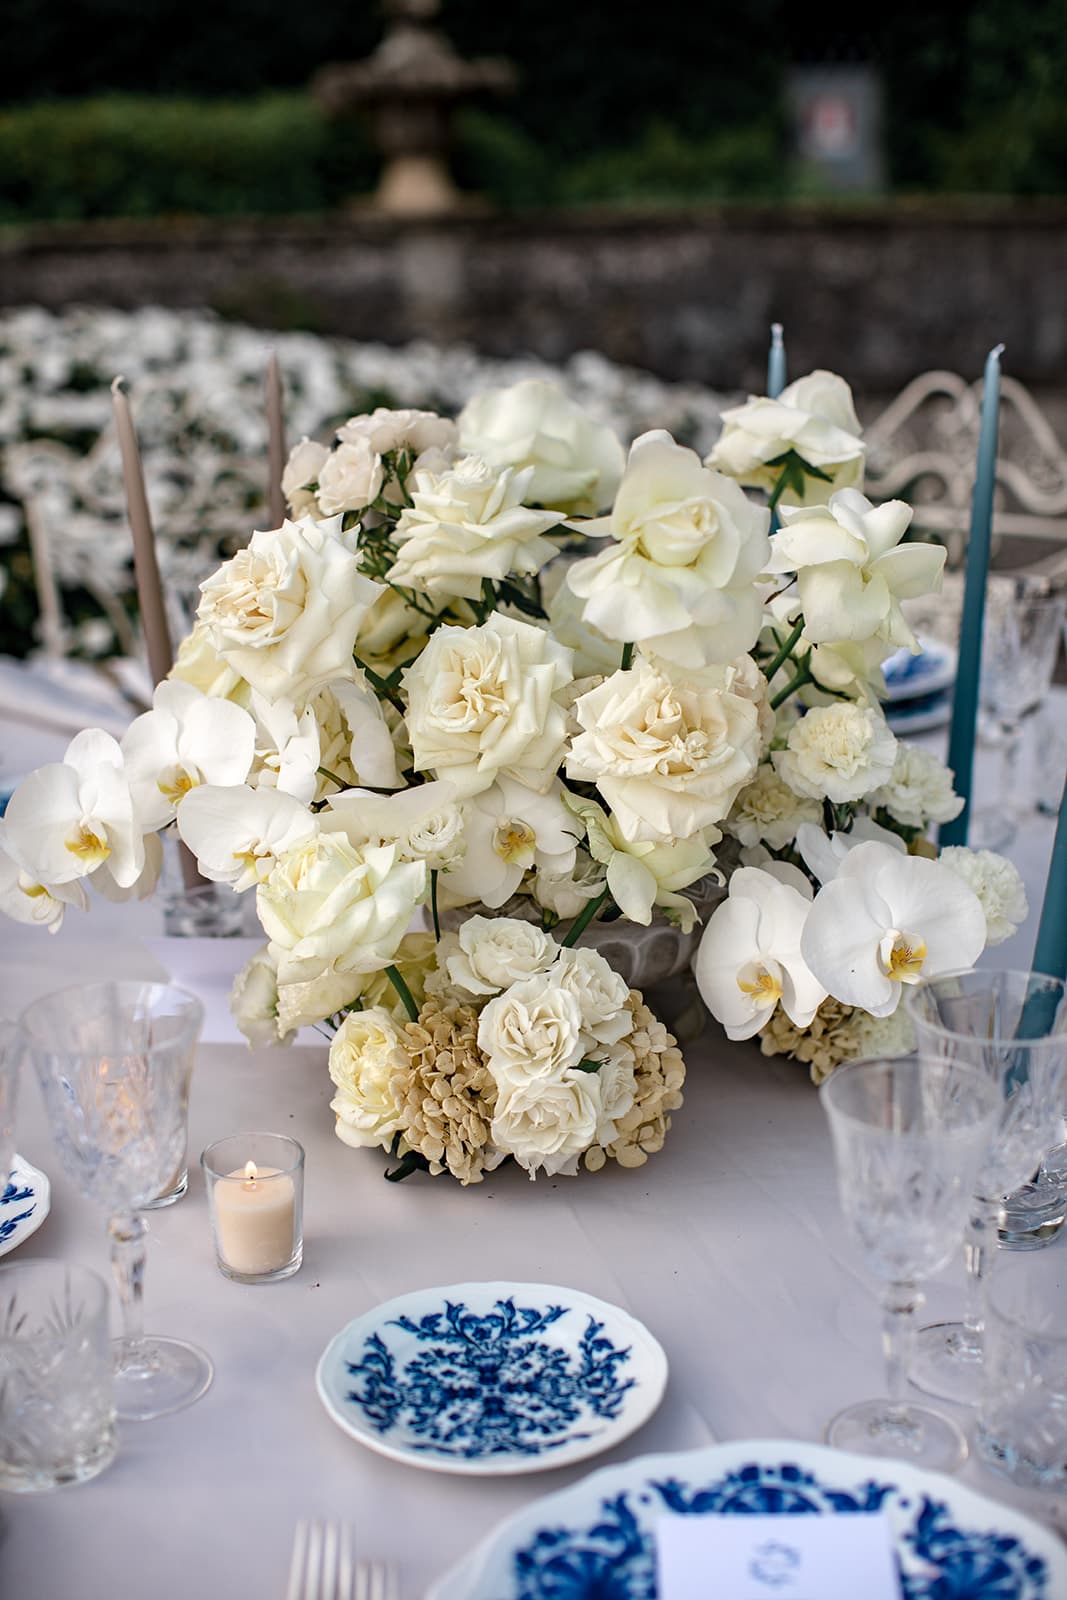 Proposal party floral arrangement centerpiece